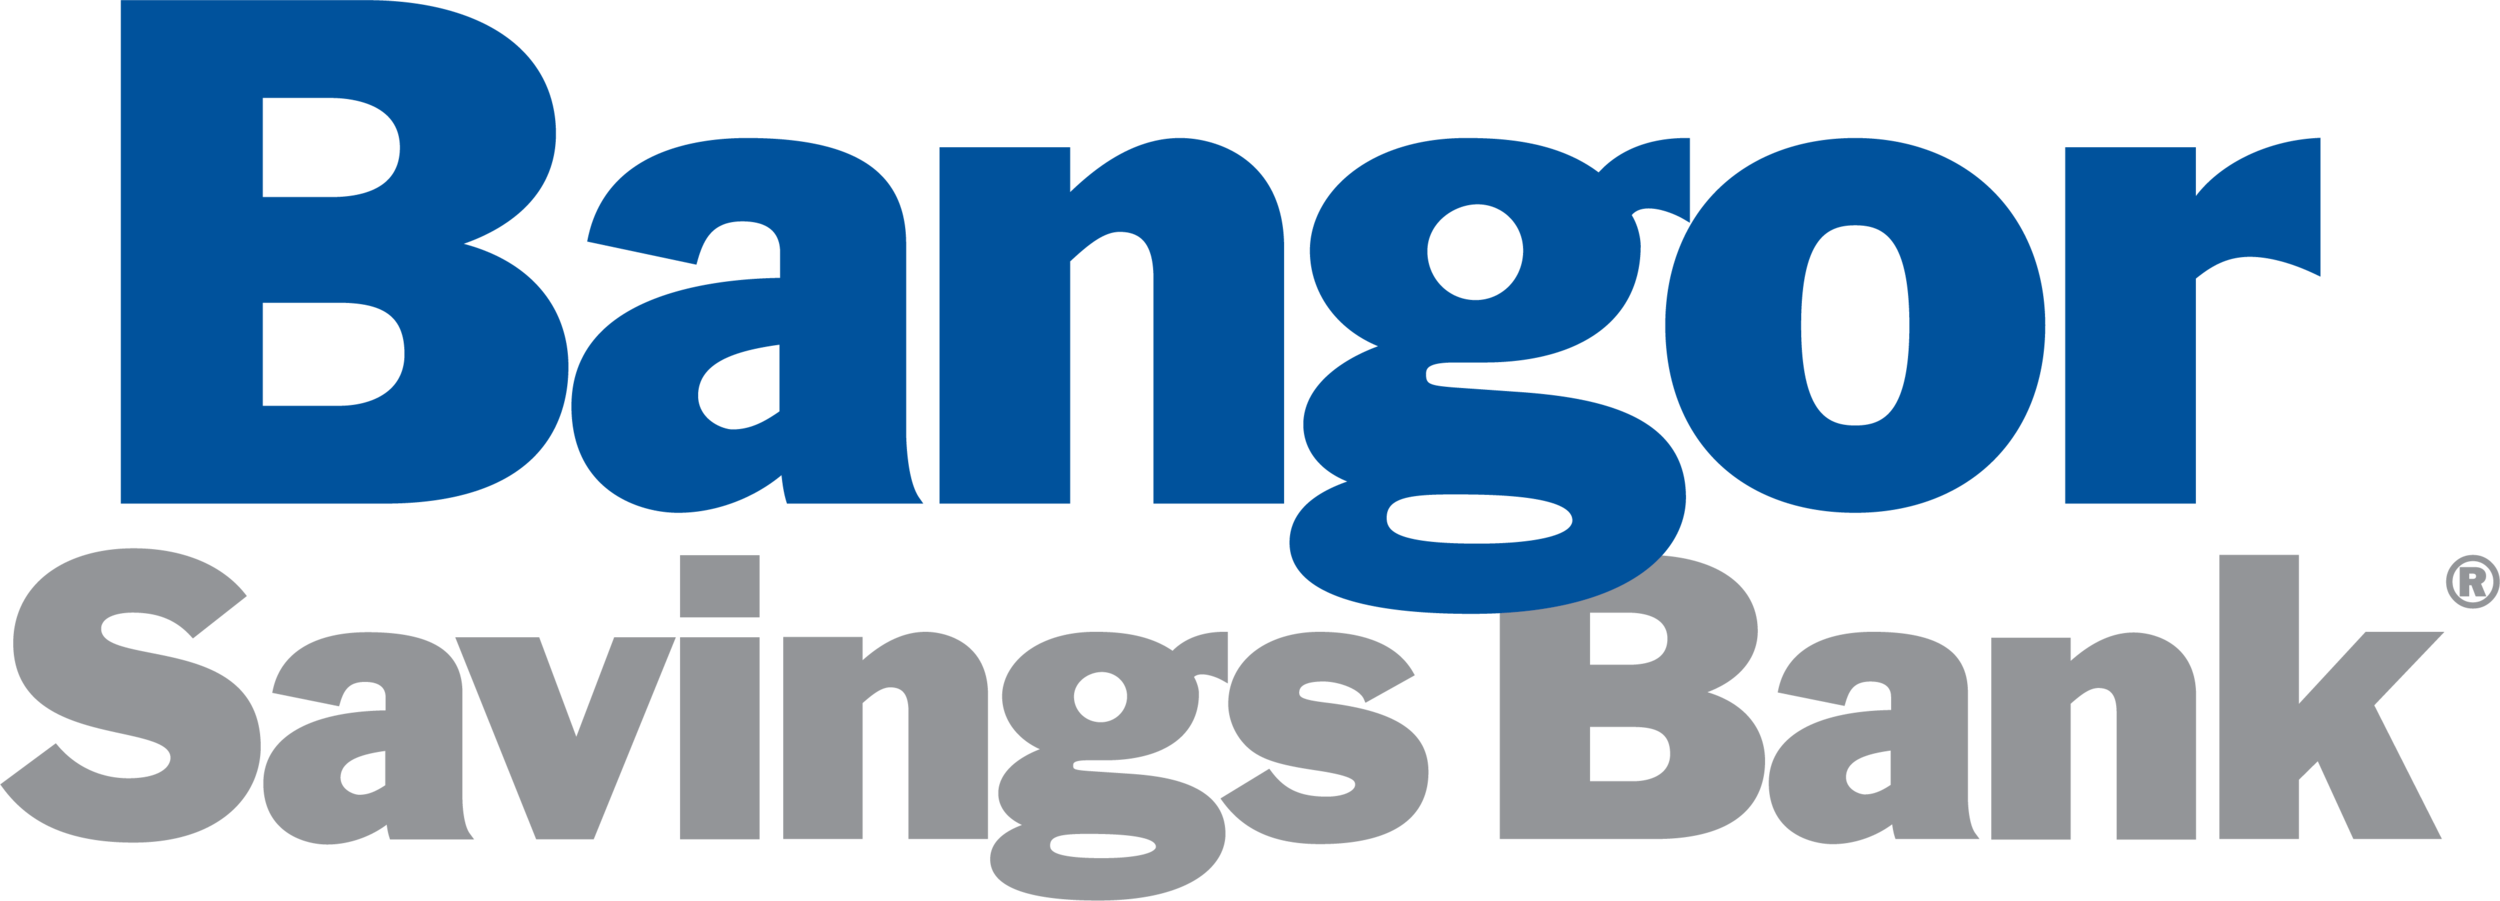 Bangor Savings Bank no tag.png